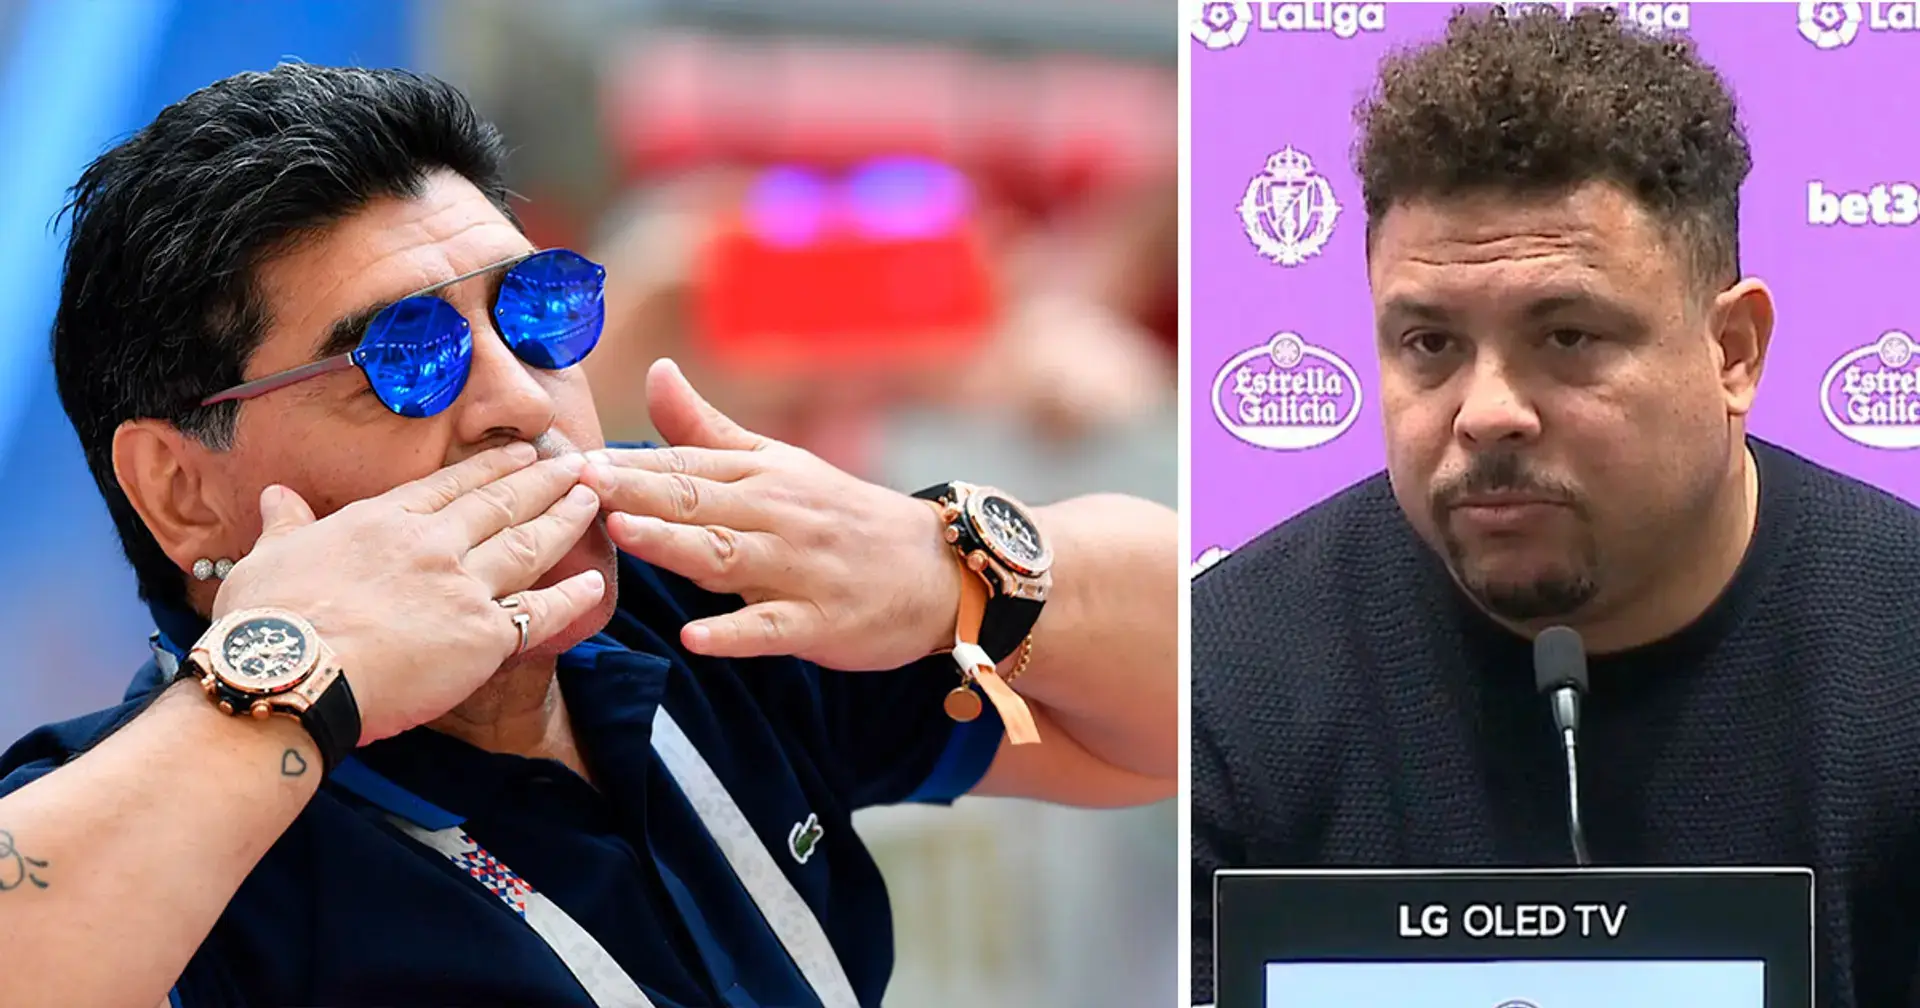 'Desde entonces no se los había quitado': el brasileño Ronaldo revela la verdadera razón por la que Diego Maradona usaba dos relojes 